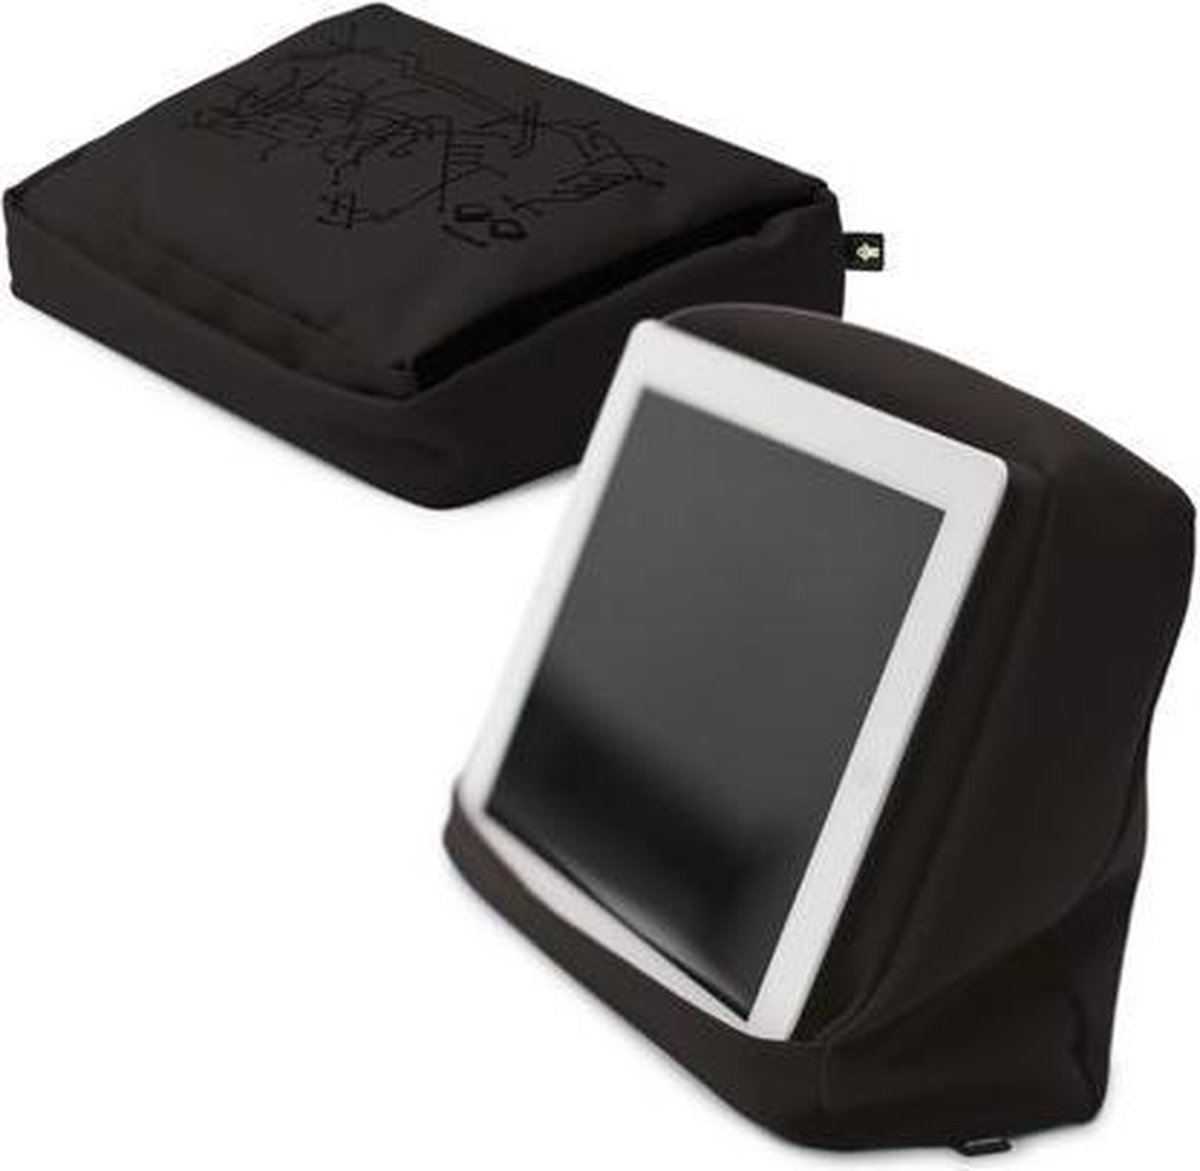 Bosign Tablet Kussen Hitech voor iPad/tablet pc Zwart- met BINNENZAK